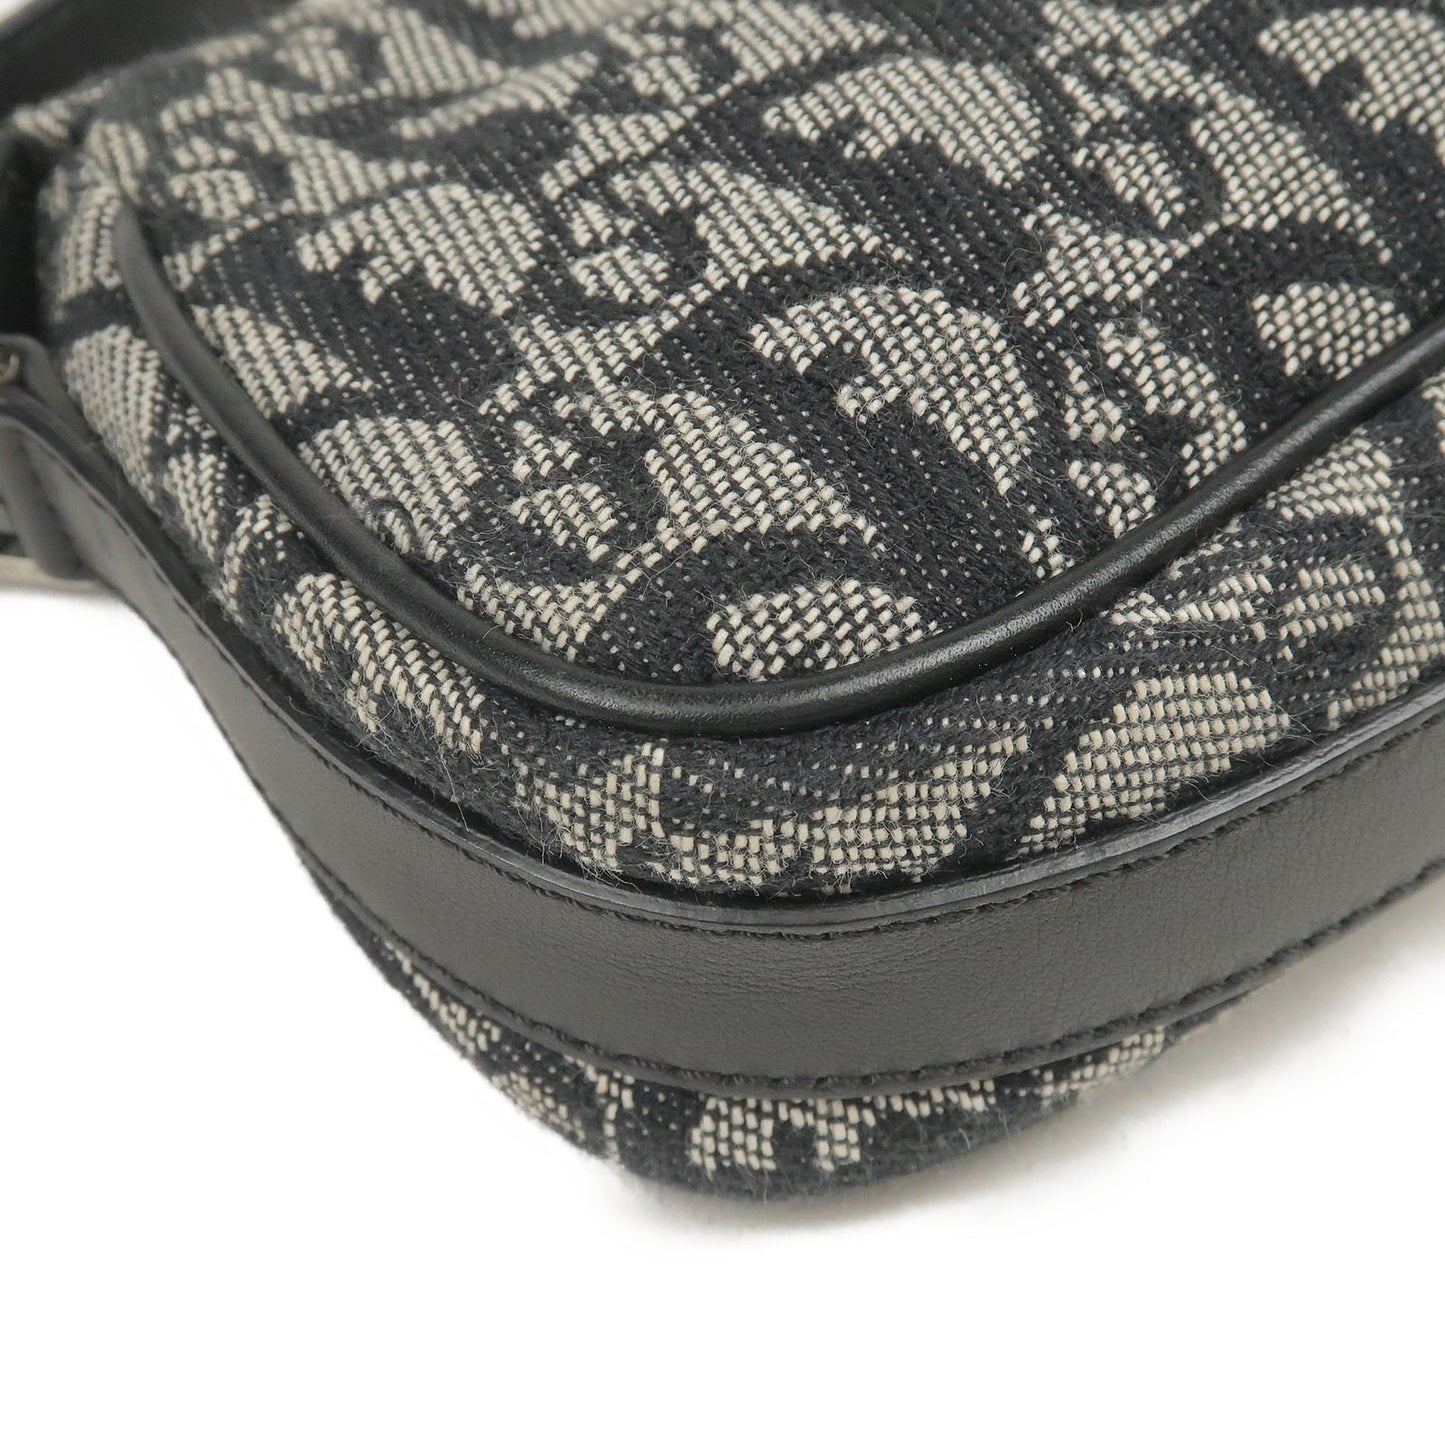 Christian Dior Trotter Shoulder Bag – THE M VNTG